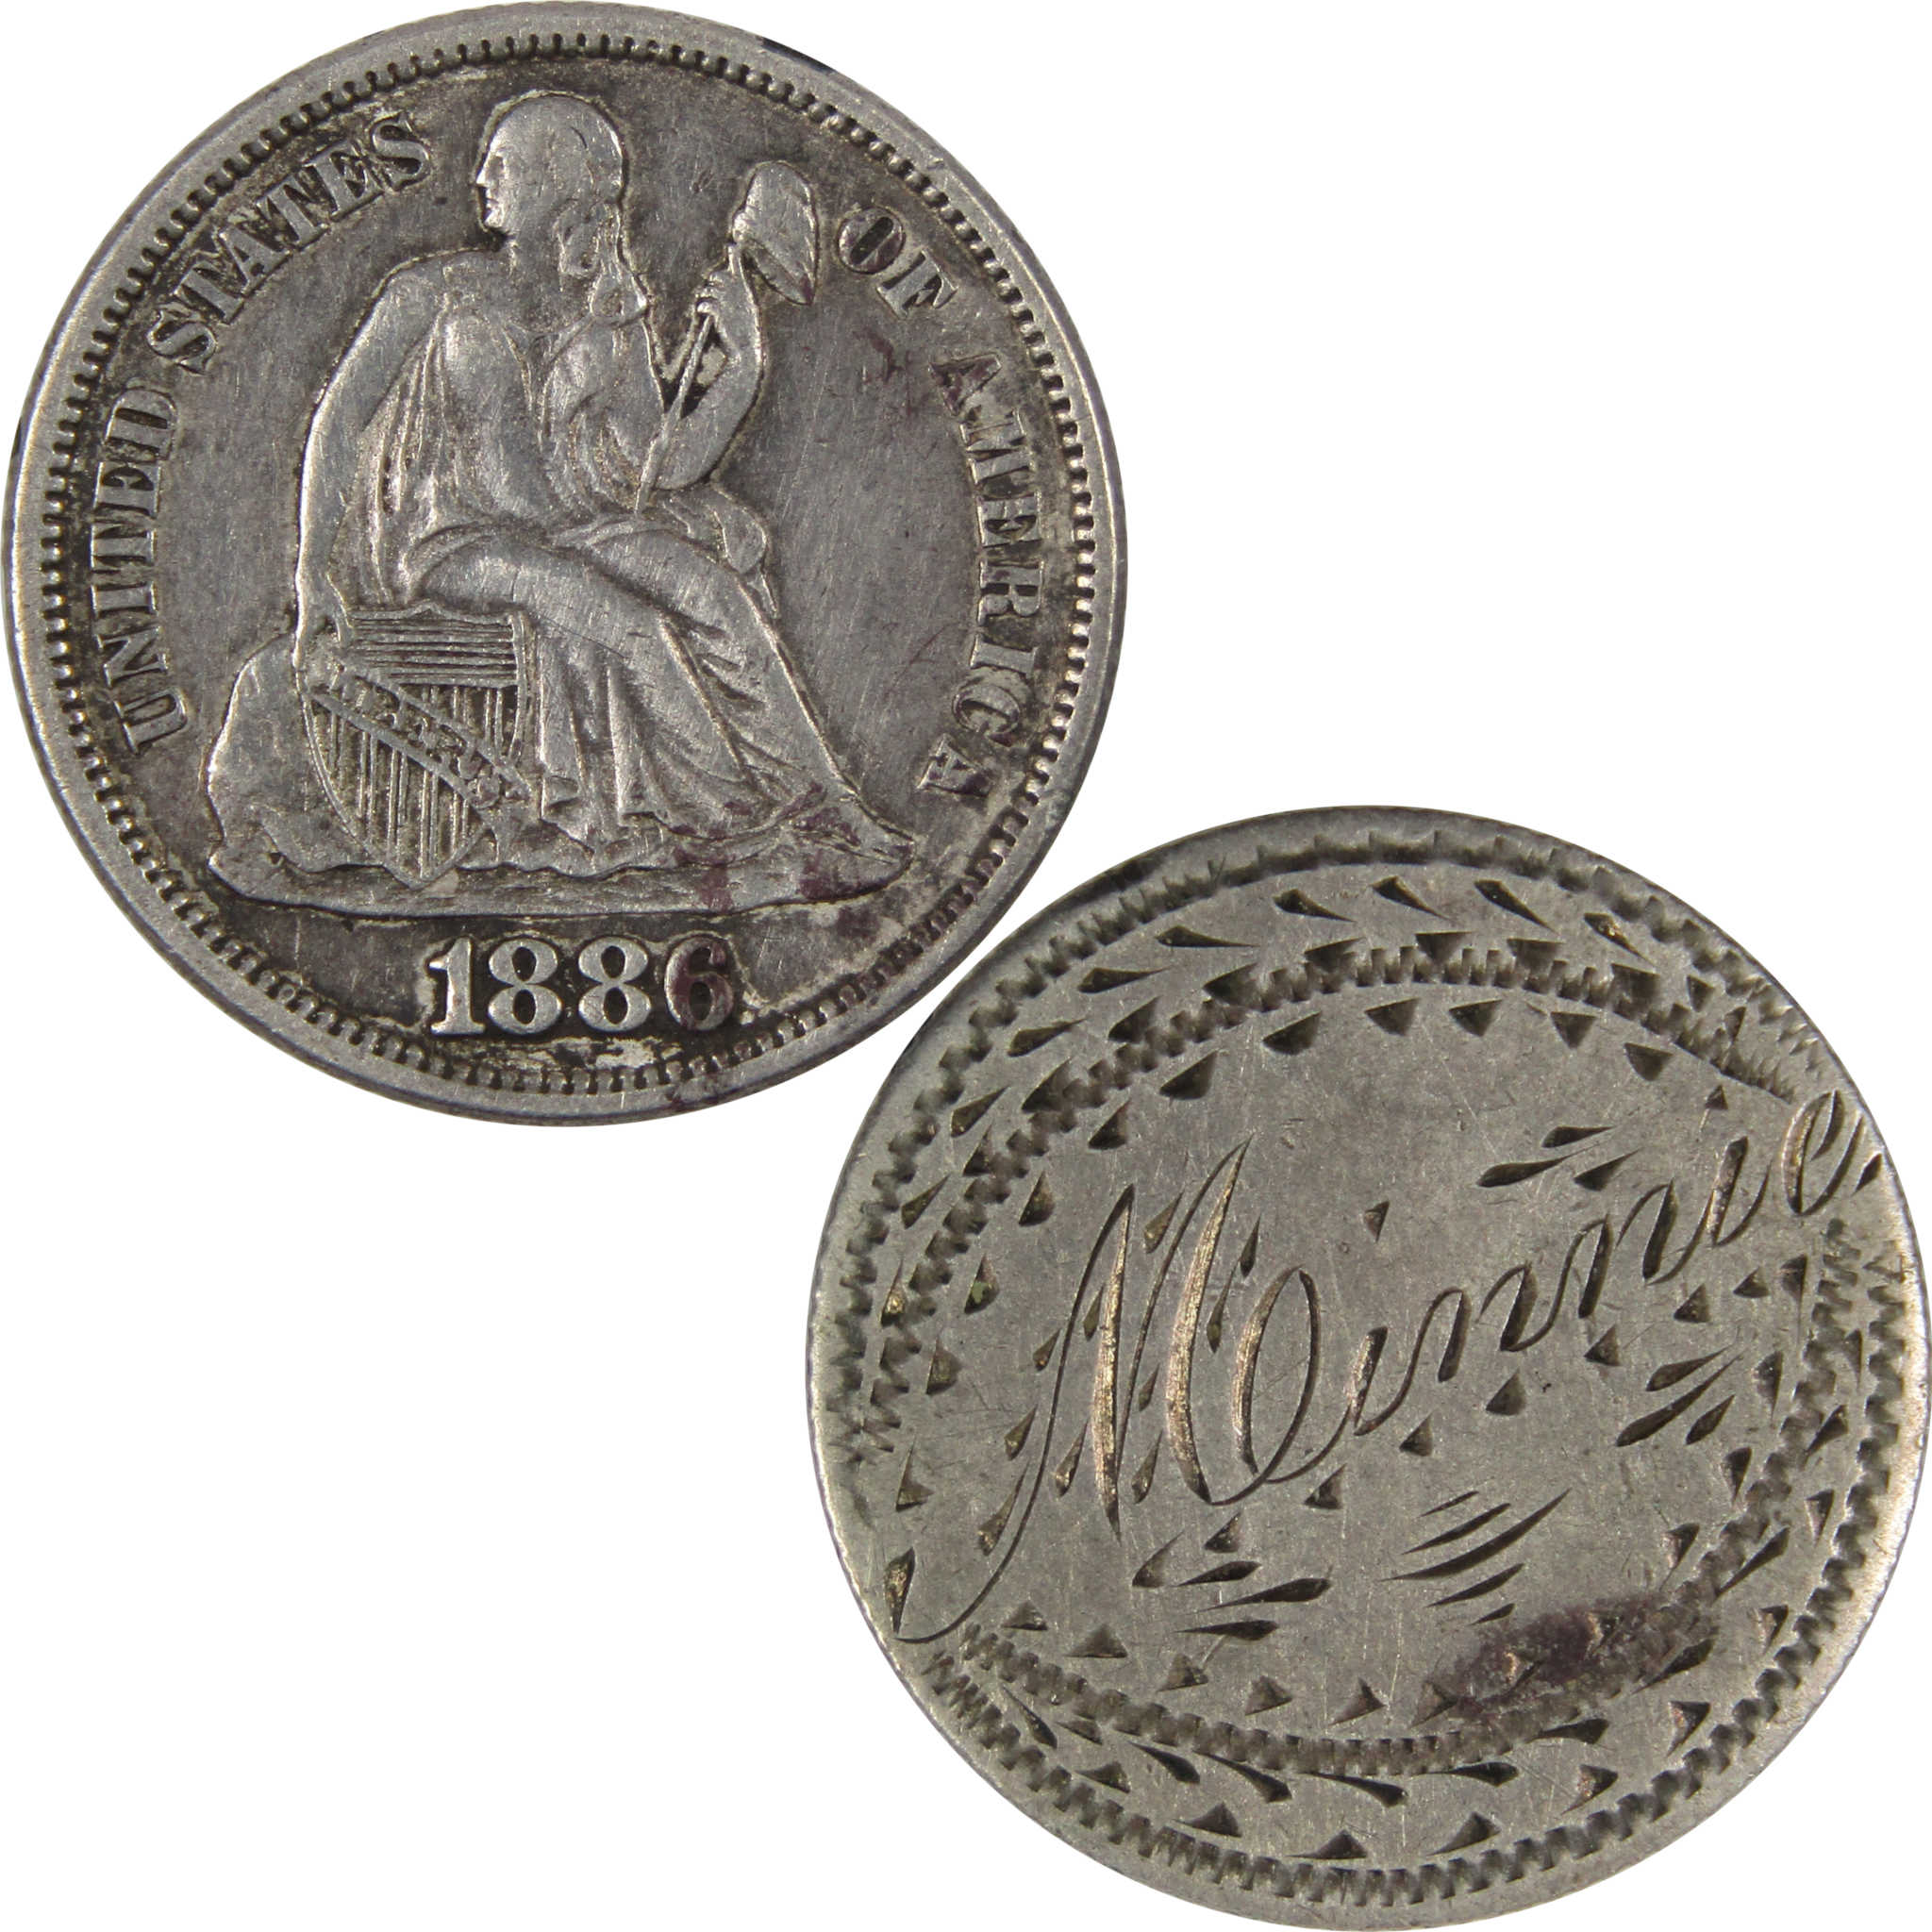 1886 Seated Liberty Dime Love Token 90% Silver 10c Coin SKU:IPC826